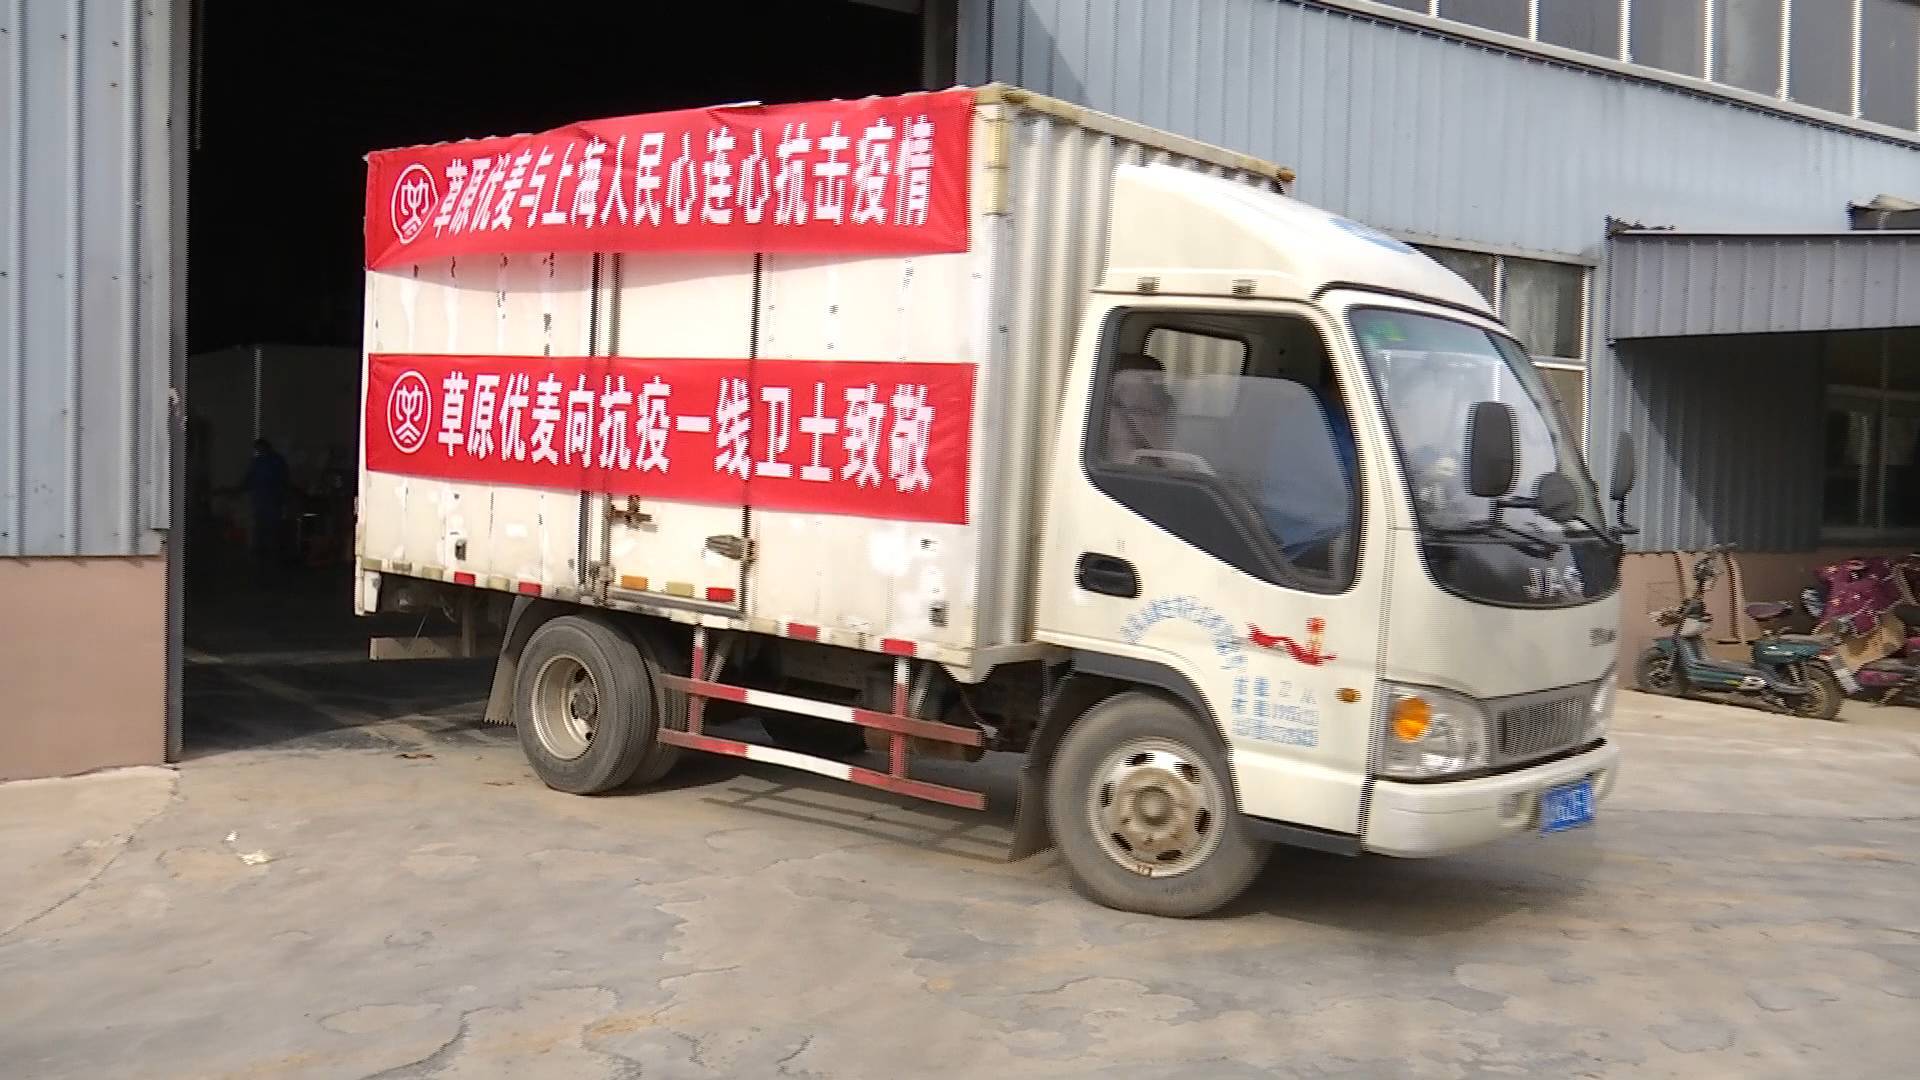 山东爱心企业捐赠上海2000多盒燕麦 上海慈善：感谢山东爱心企业、人士